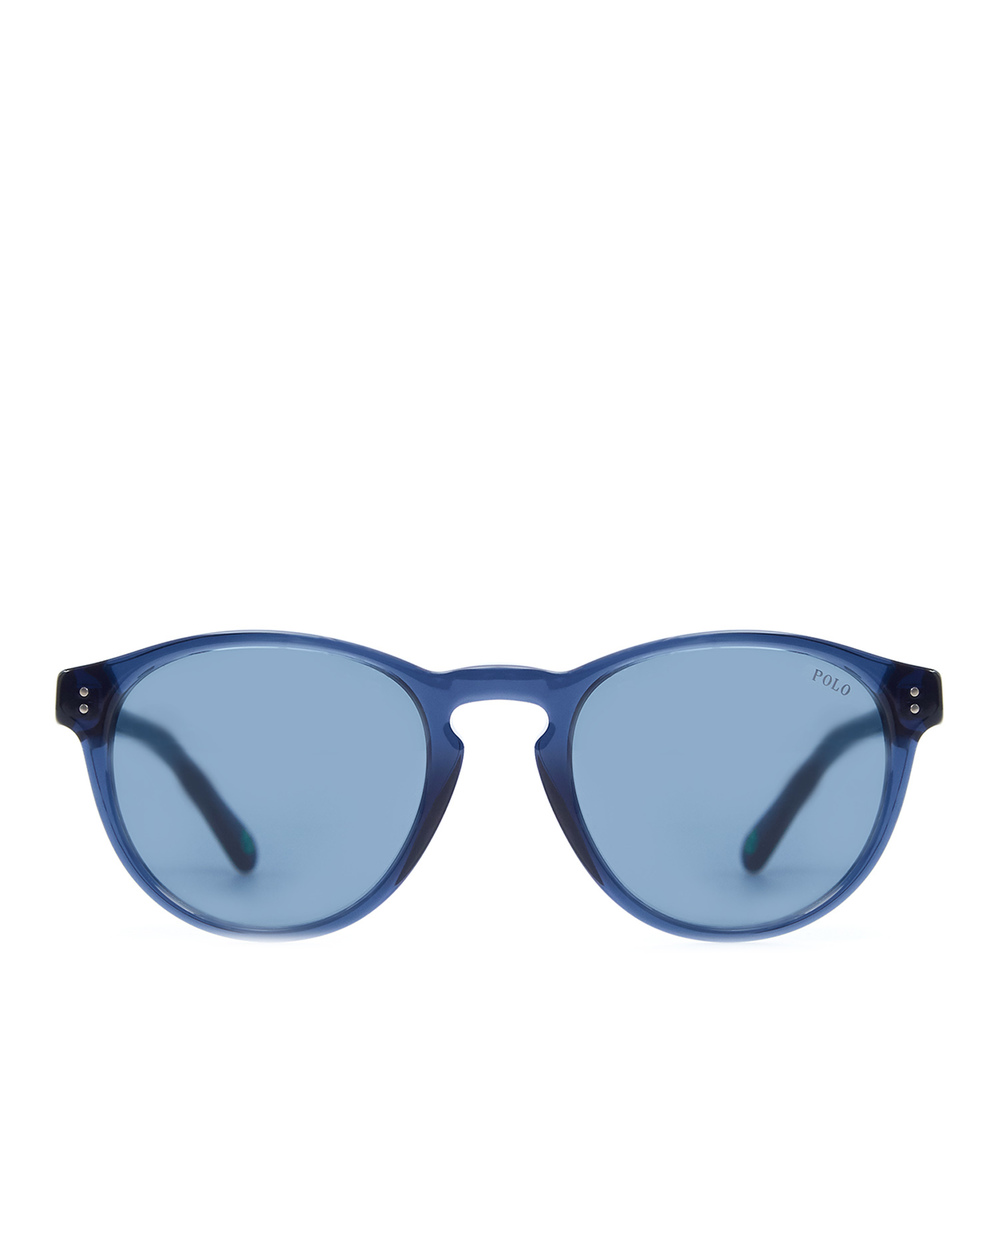 Солнцезащитные очки Polo Ralph Lauren 0PH4172595580, синий цвет • Купить в интернет-магазине Kameron